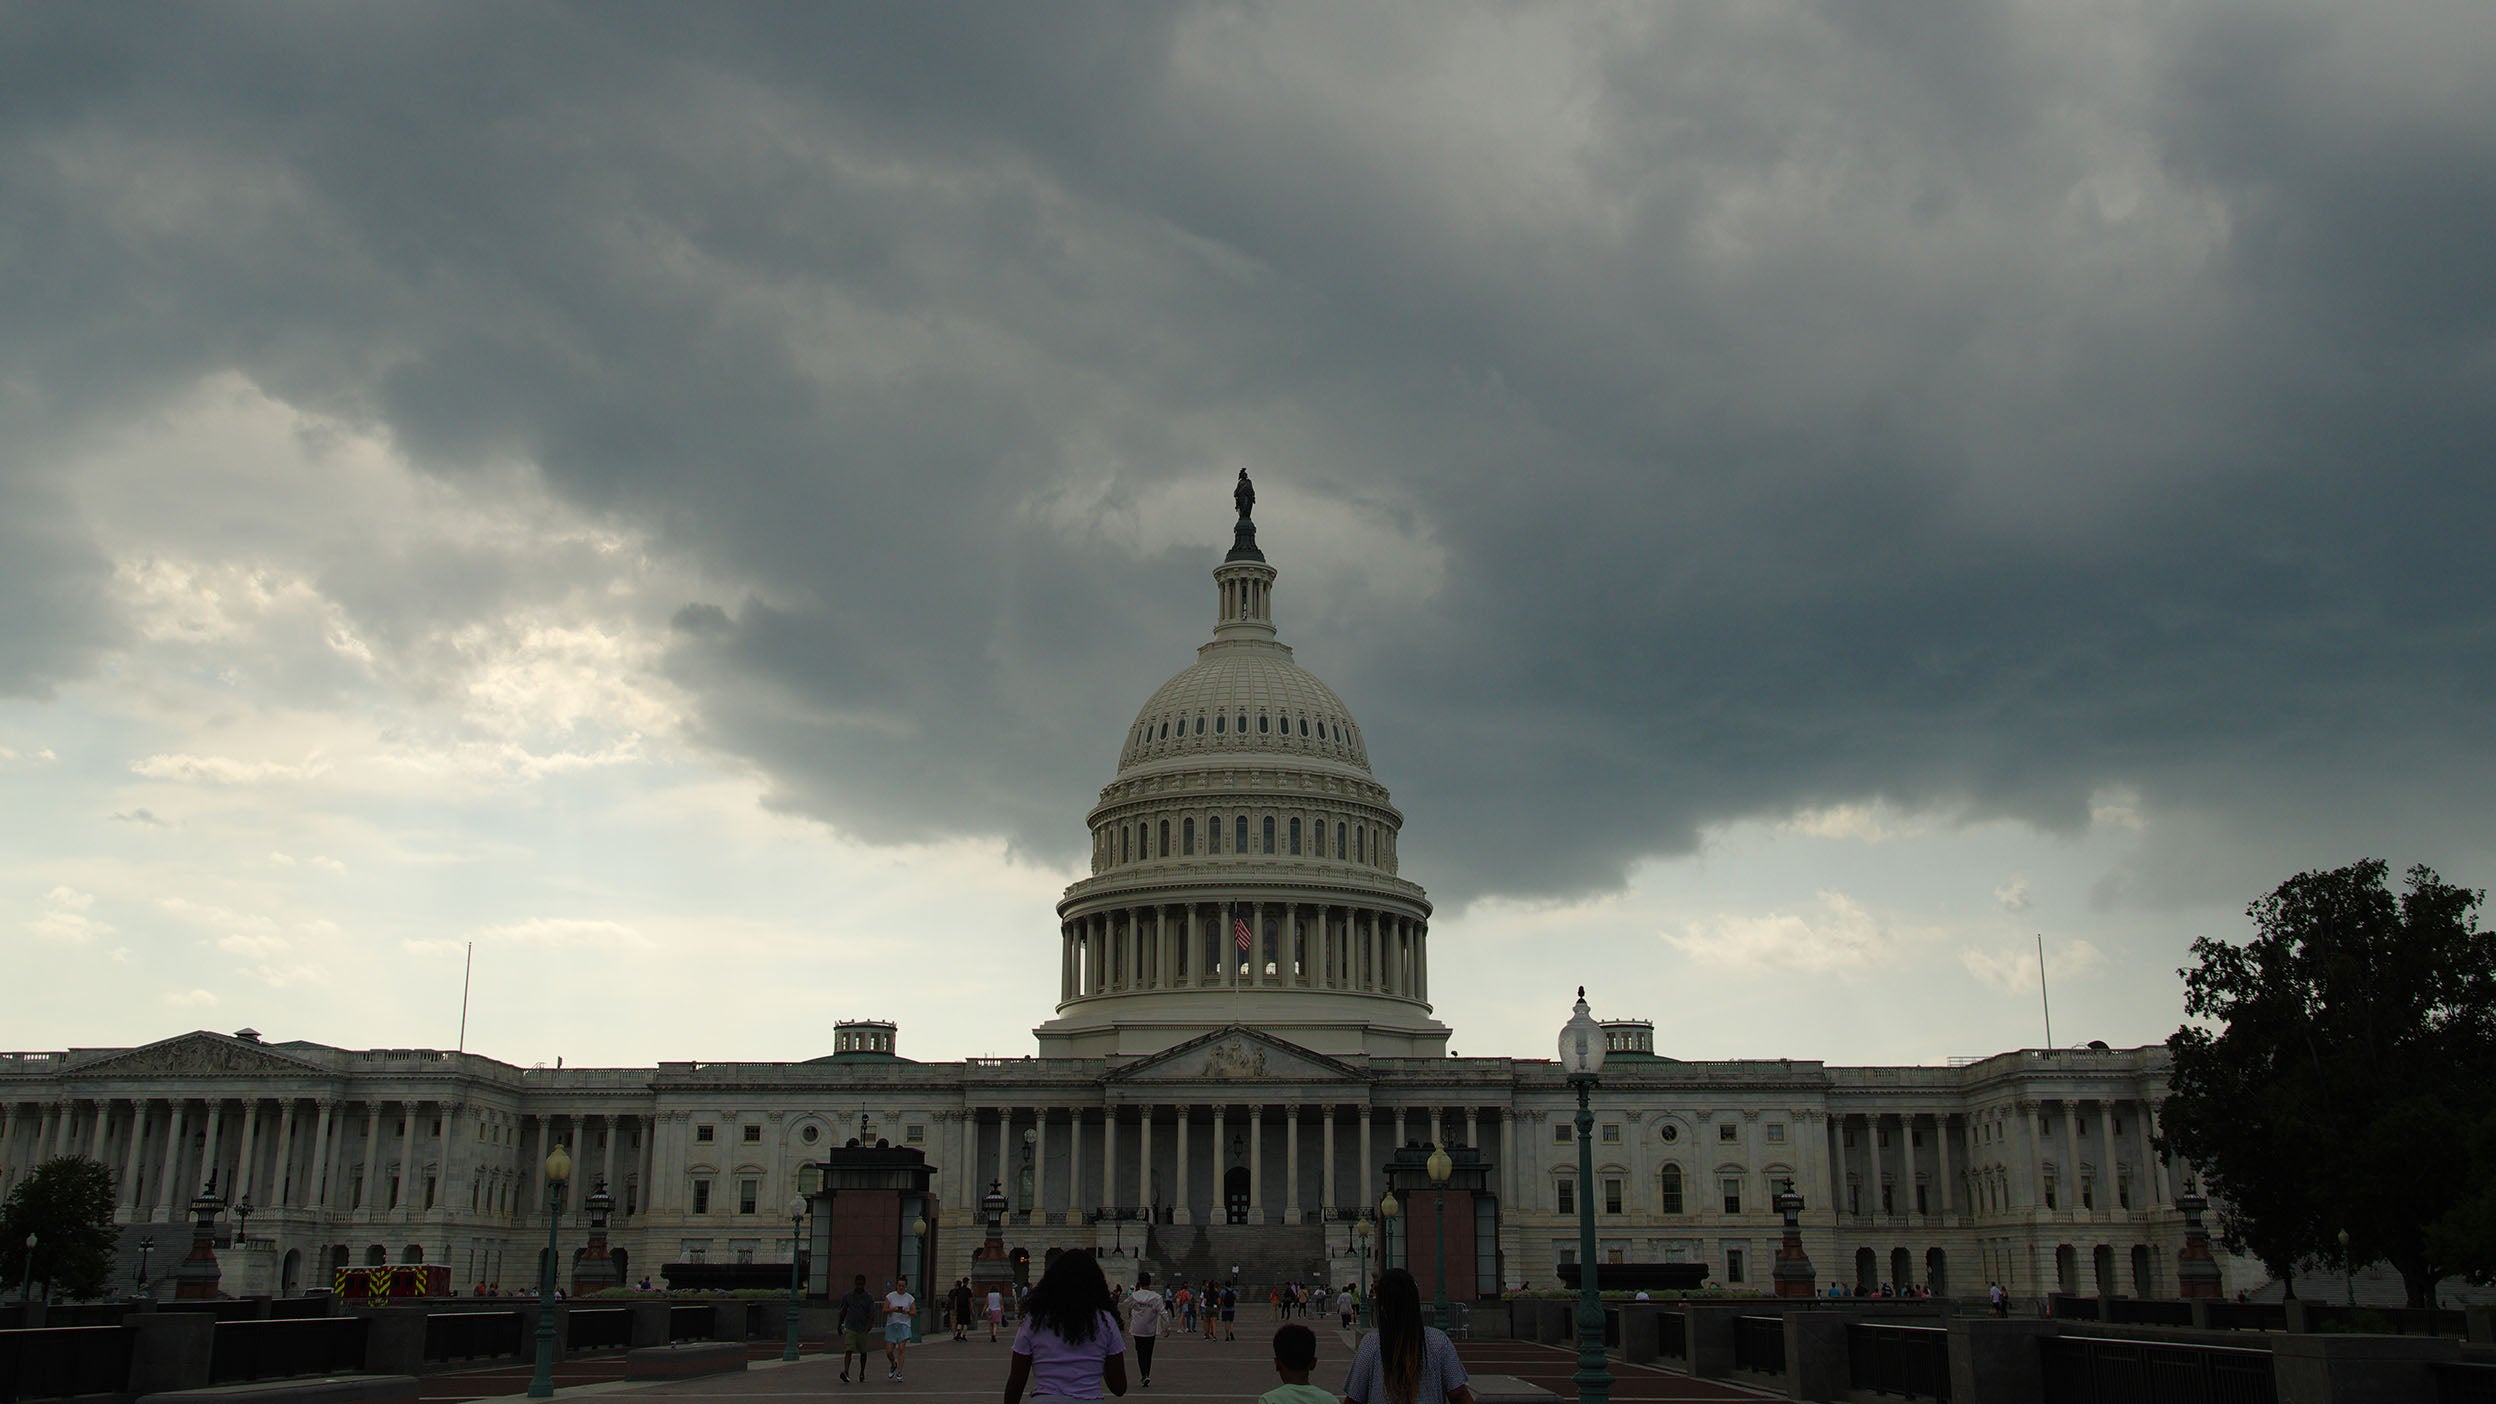 Un orage imminent assombrit le ciel au-dessus du Capitole à Washington, D.C.